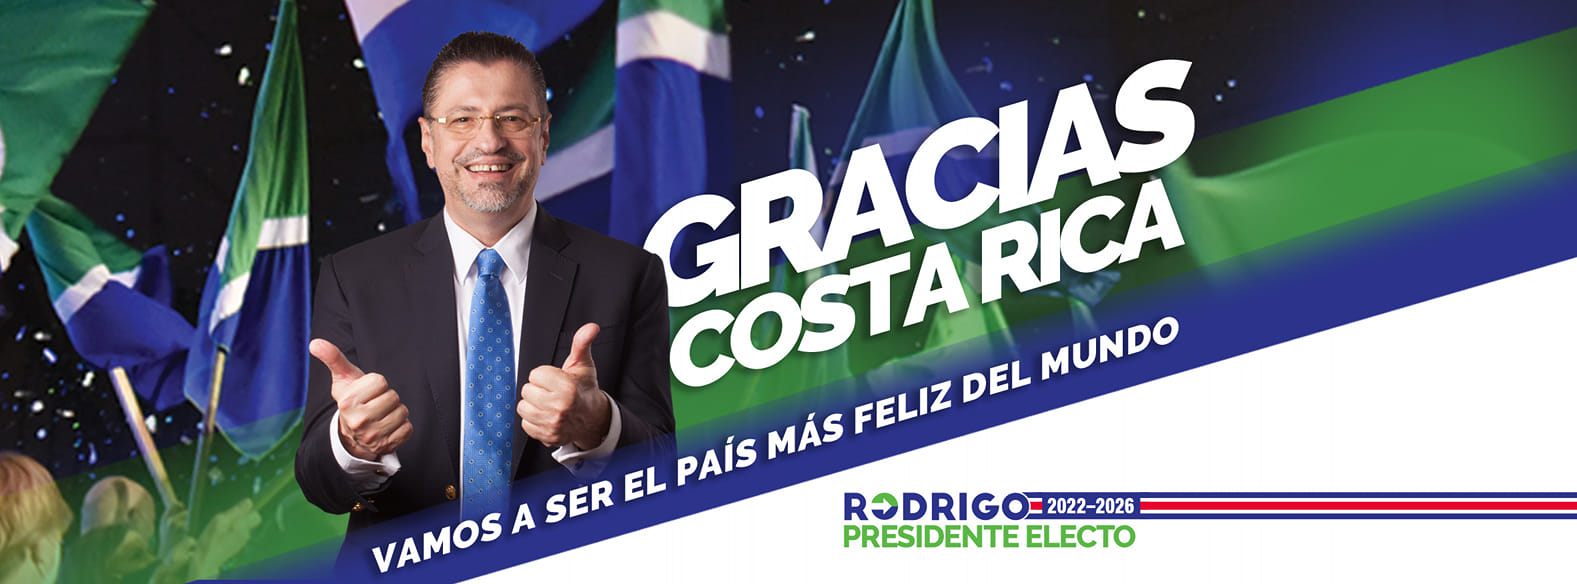 Conservatorul Rodrigo Chaves a fost ales președinte în Costa Rica